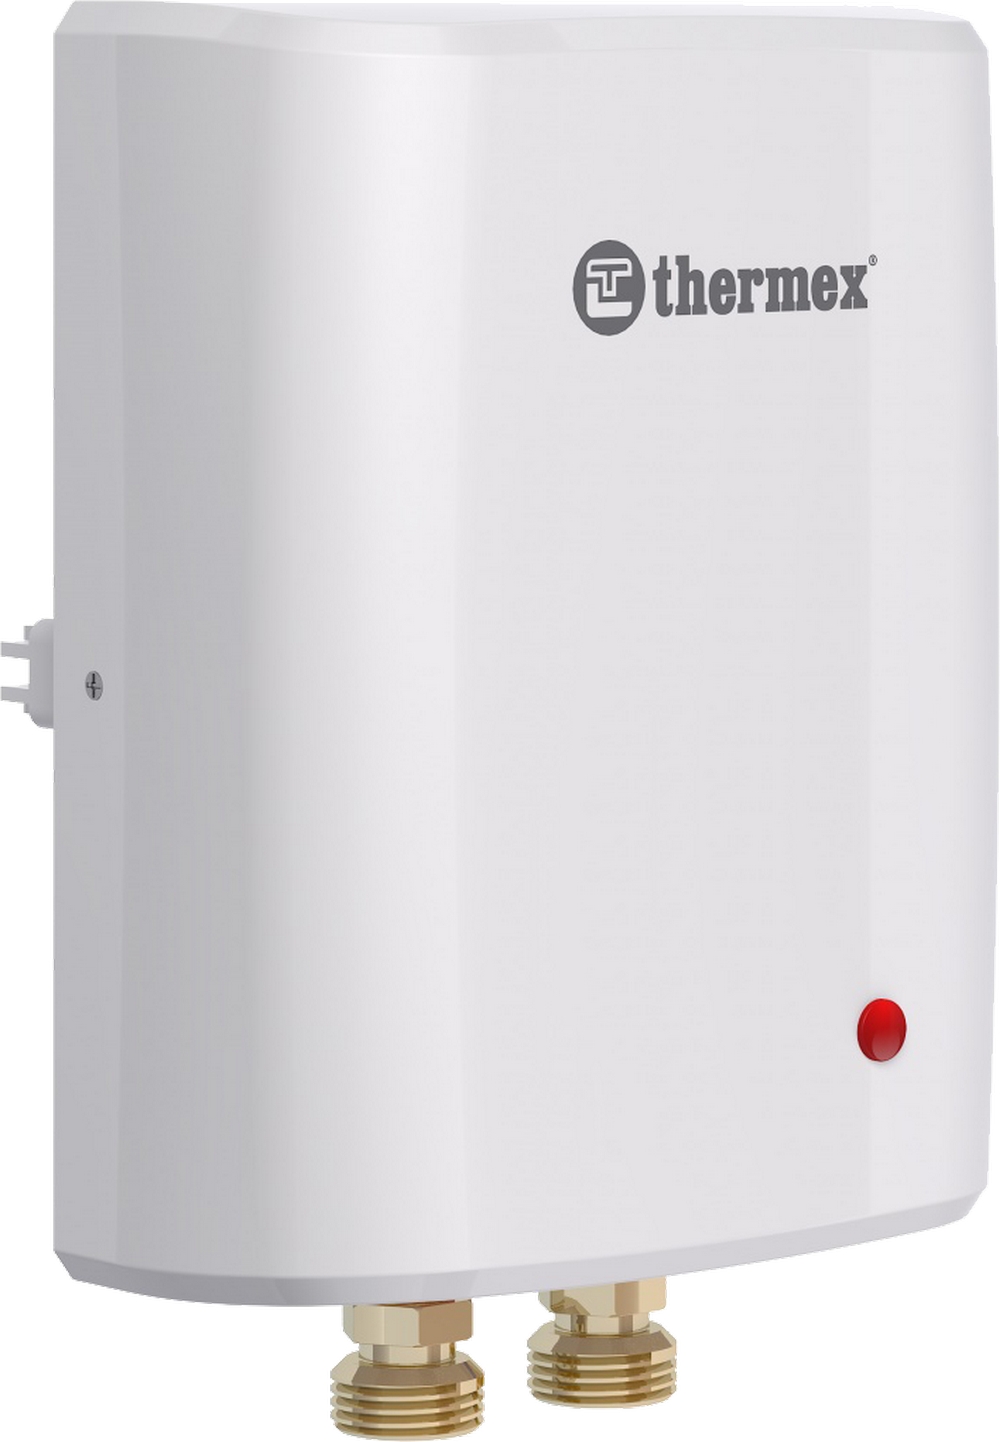 Проточный водонагреватель Thermex Surf 5000 отзывы - изображения 5